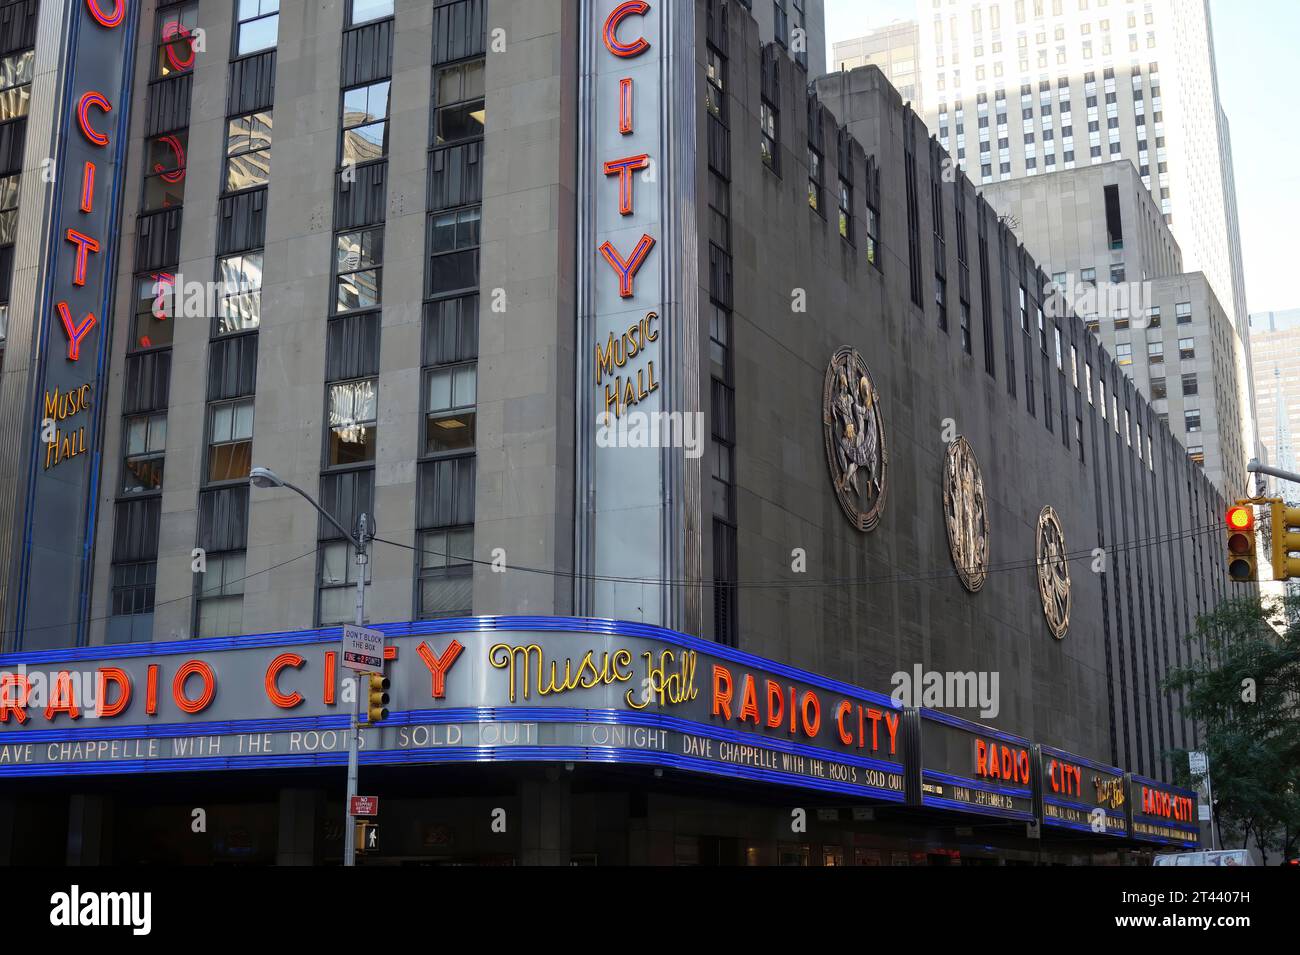 New York, État de New York, États-Unis 28 09 2013 - en gros plan sur New York, radio City concert hall bâtiment sur Broadway Streets pendant la journée. Banque D'Images